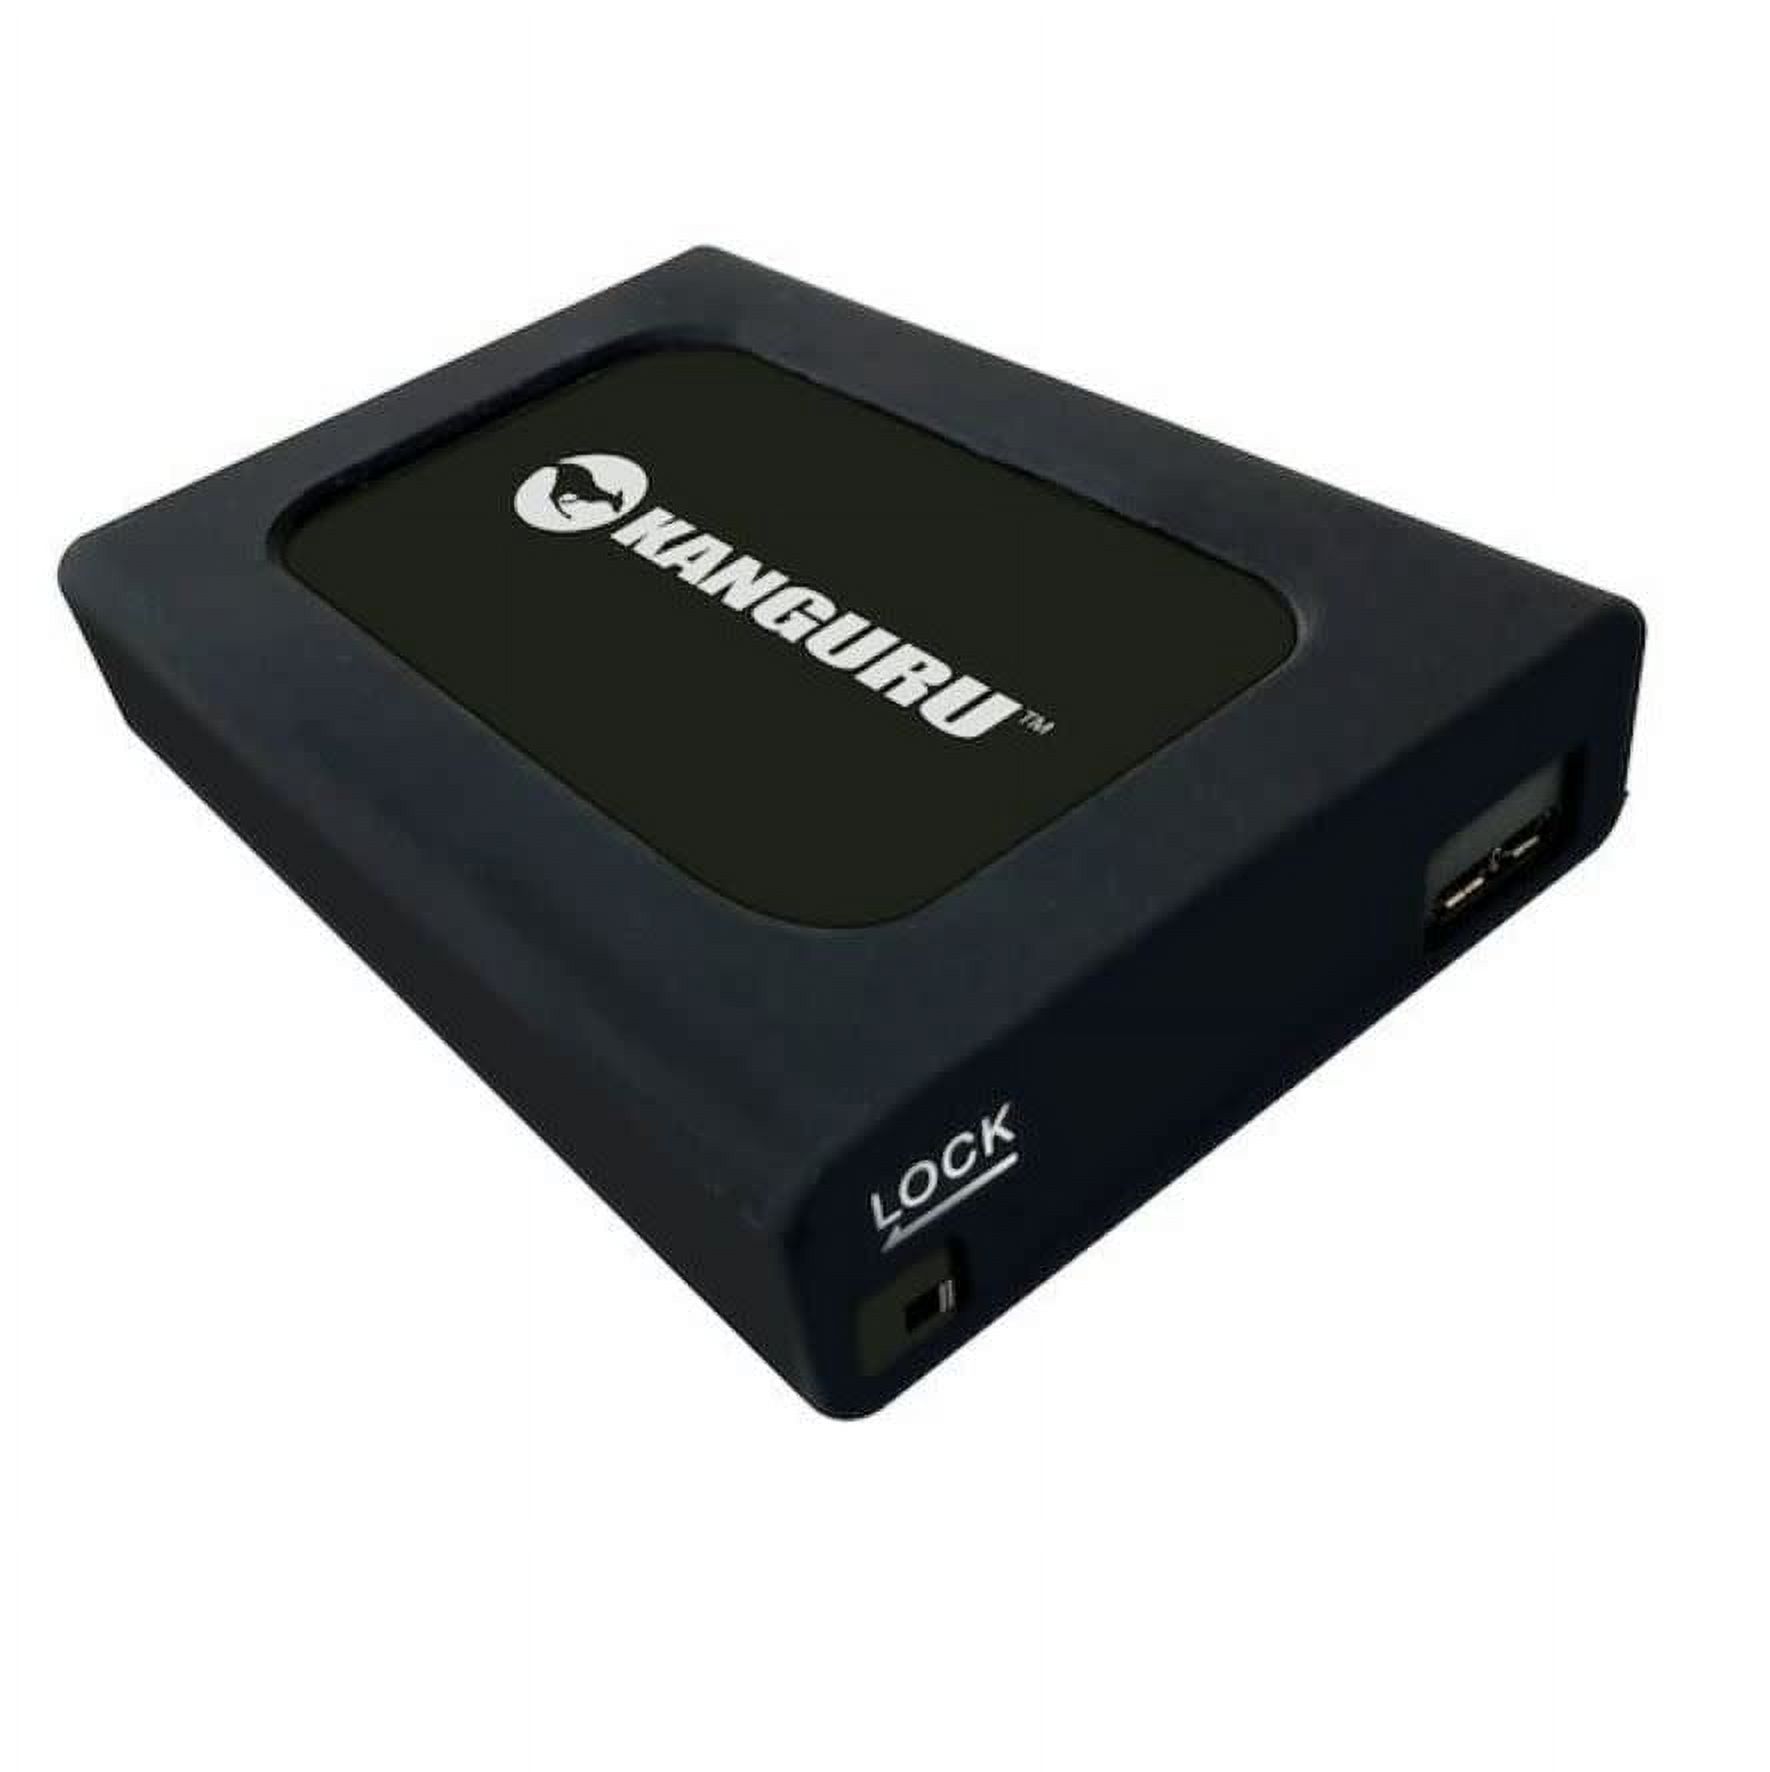 Kanguru 4TB UltraLock HDD USB 3.0 External Hard Drive - image 1 of 2